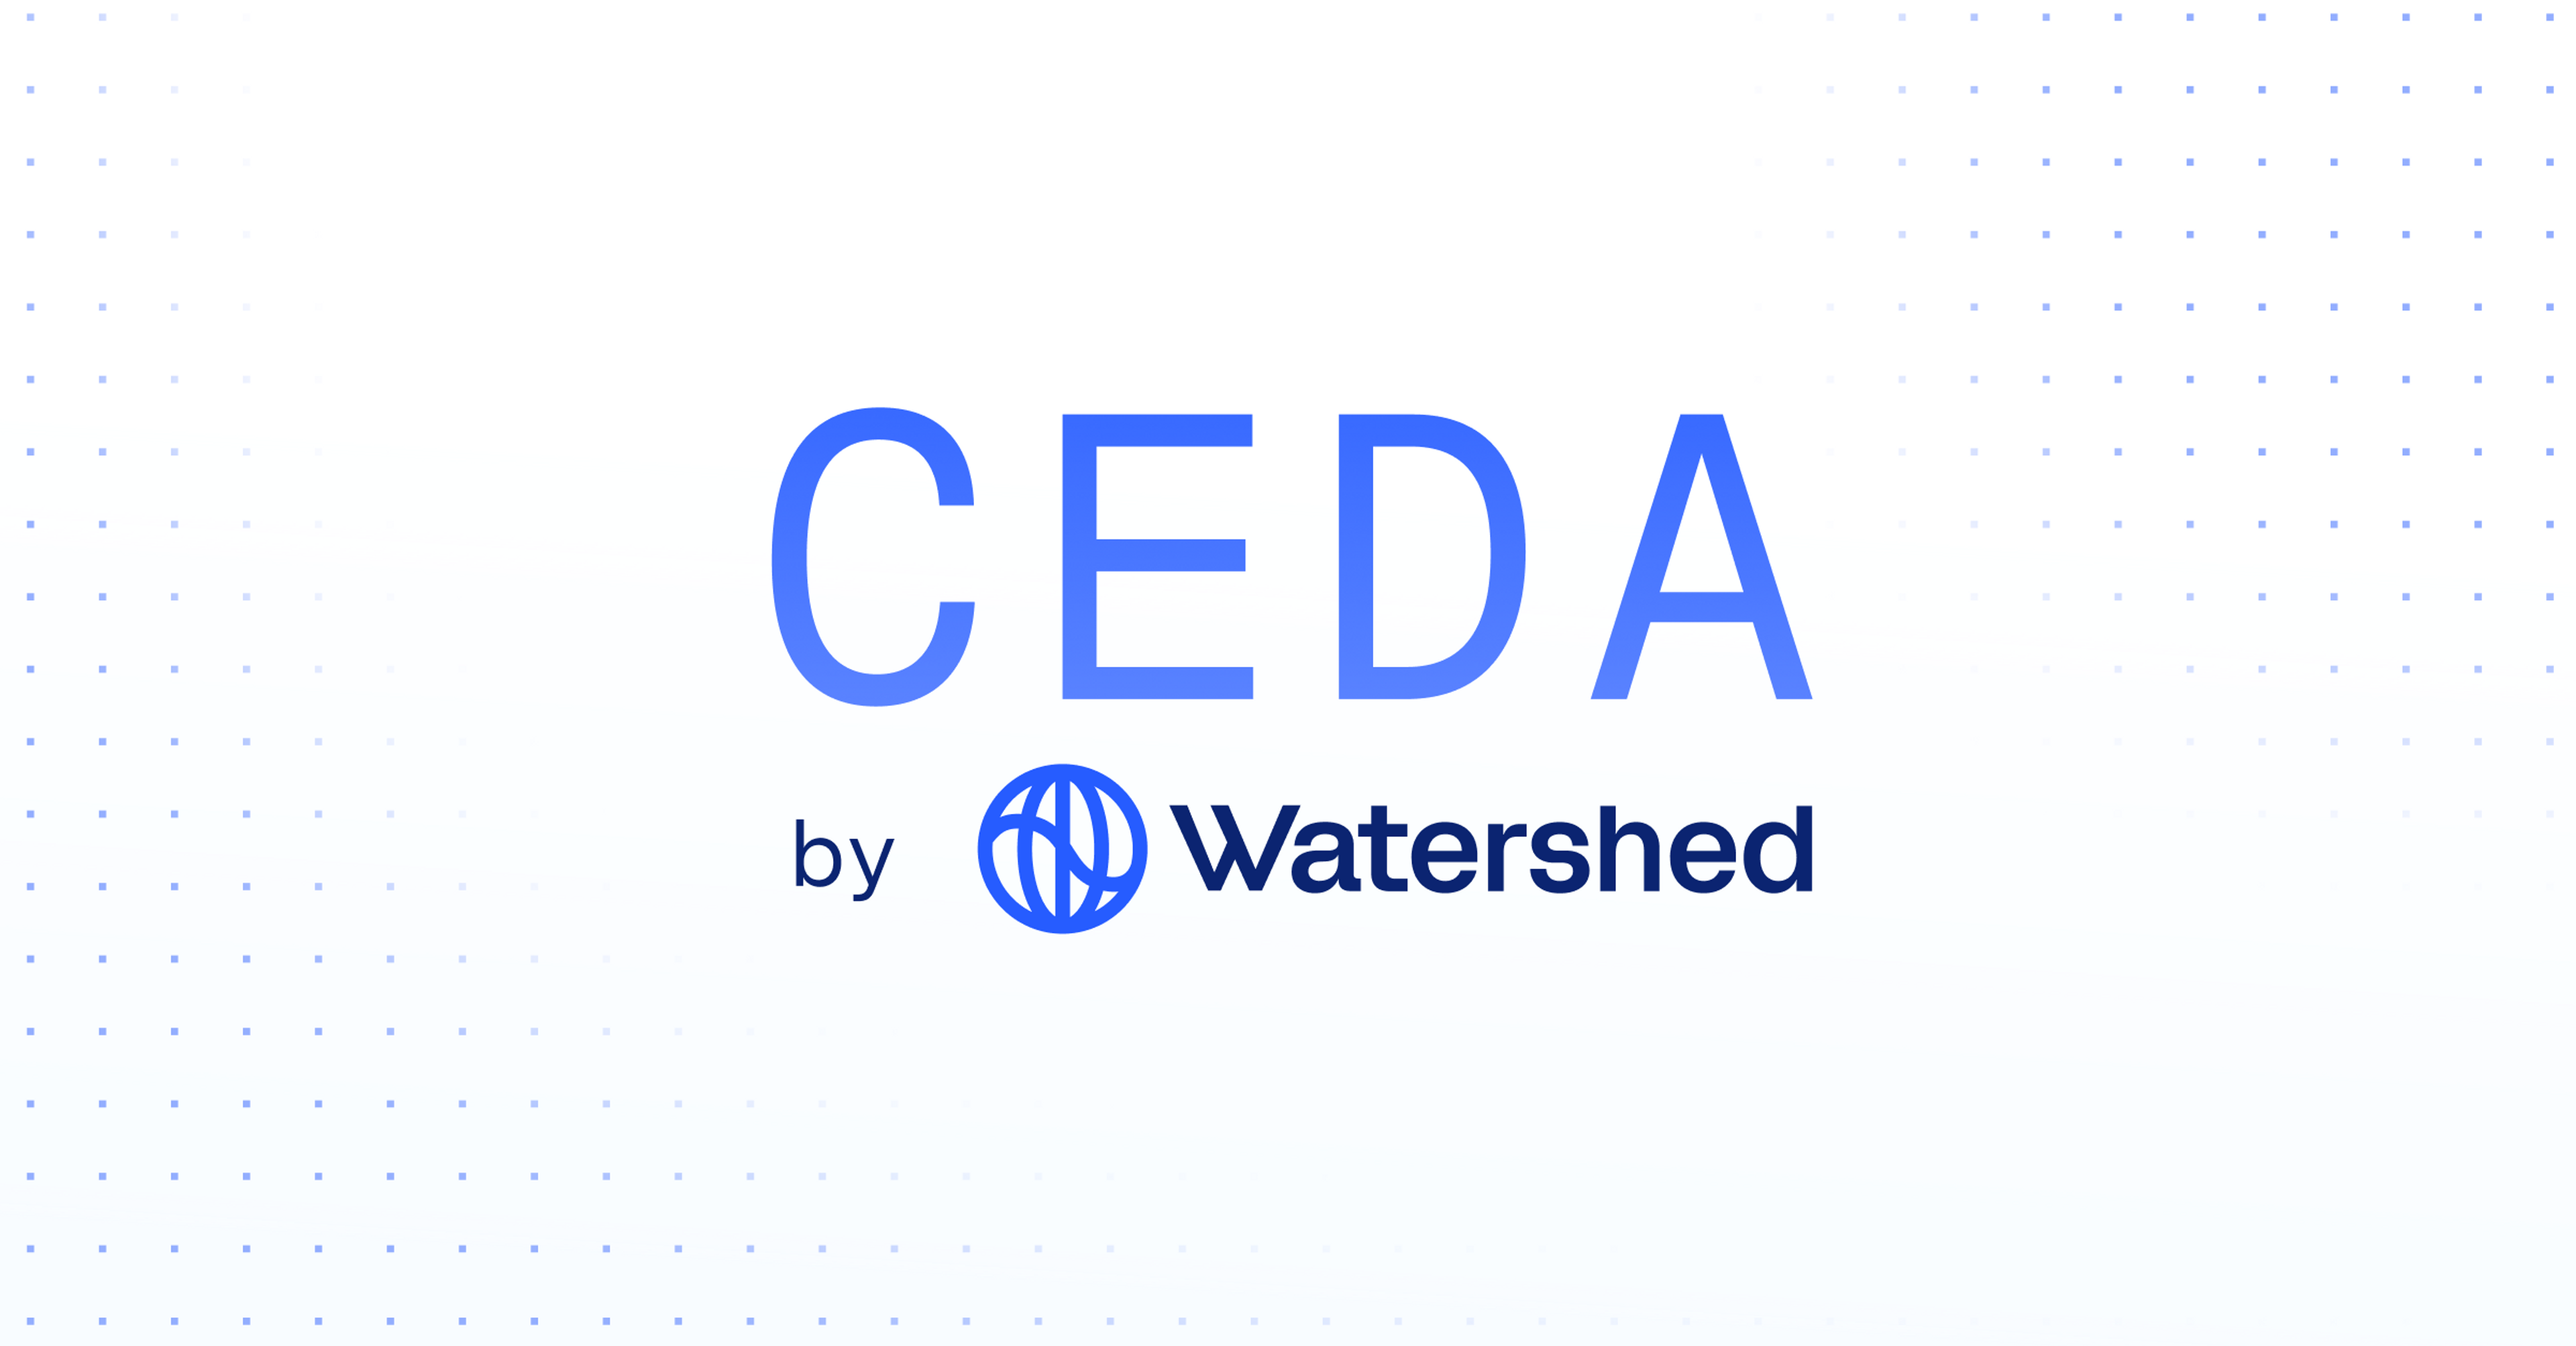 CEDA by Watershed